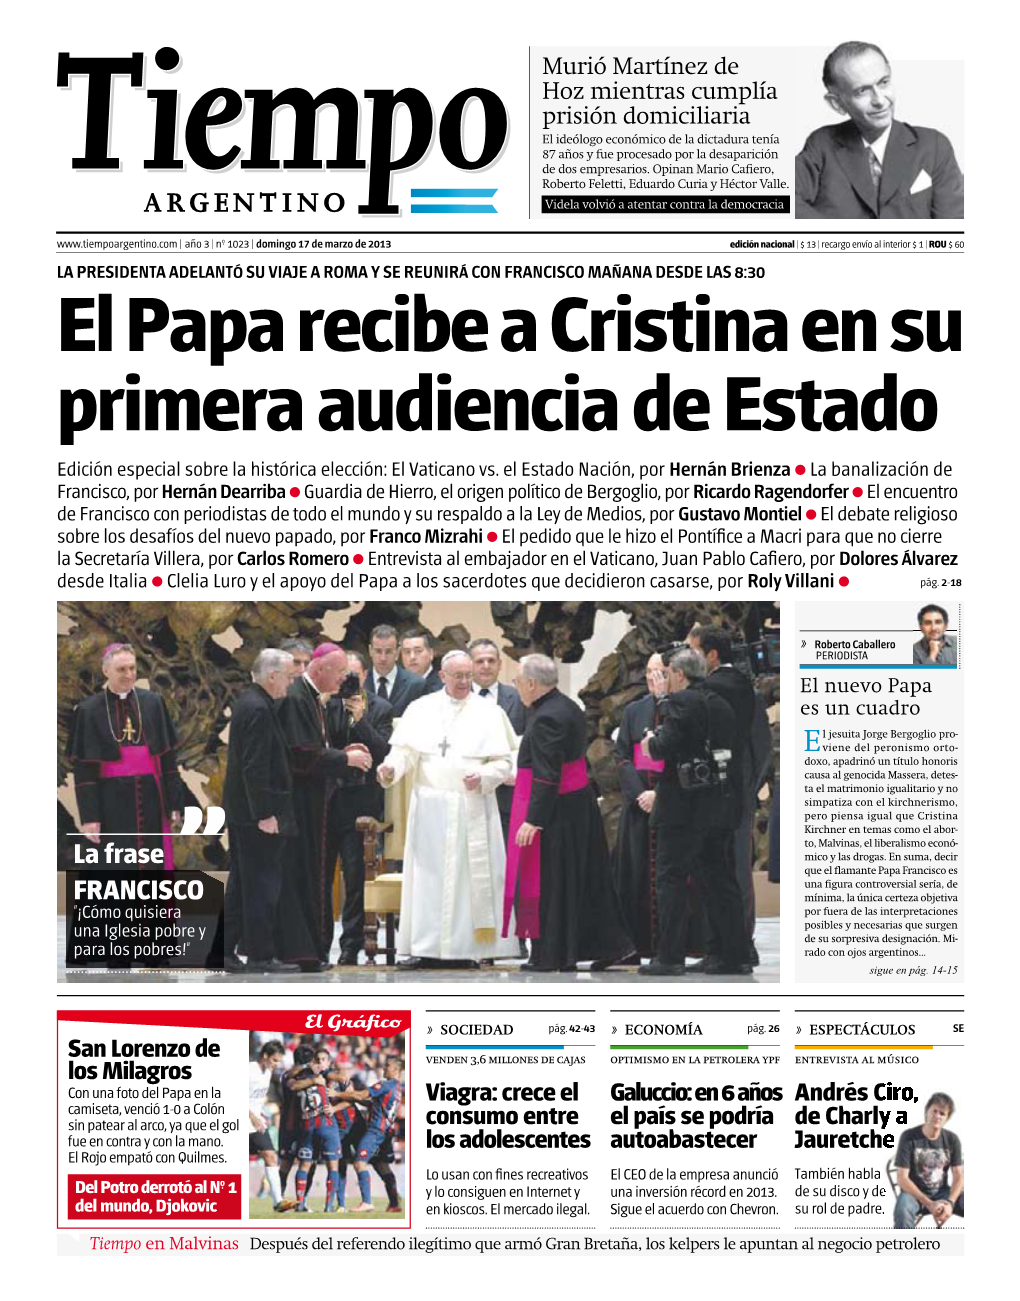 El Papa Recibe a Cristina En Su Primera Audiencia De Estado